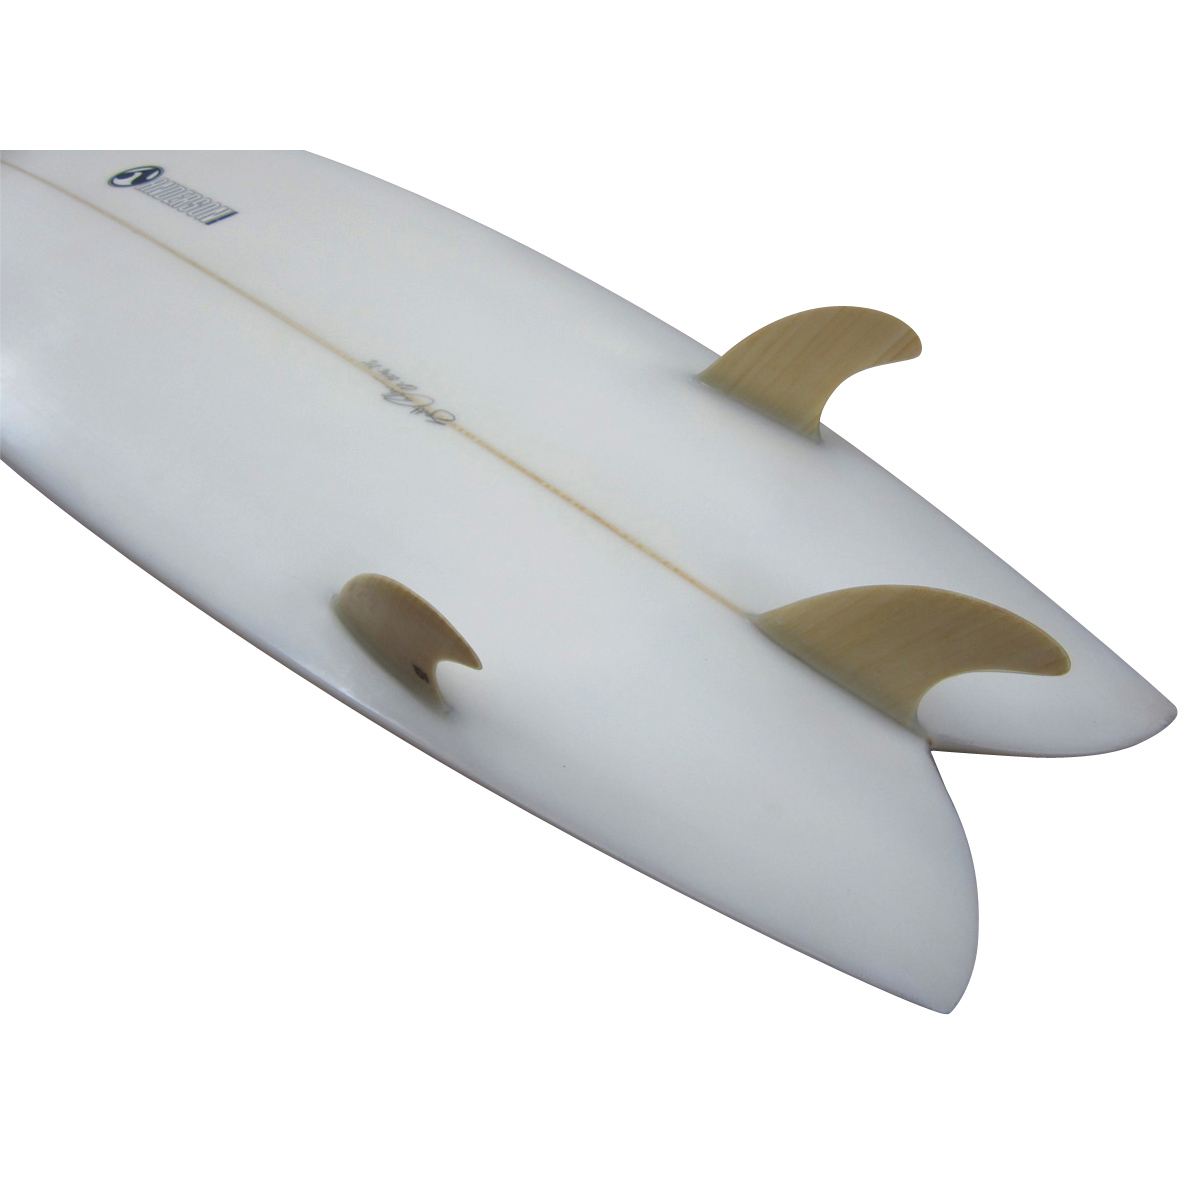 Anderson Surfboards / Custom 6`0 Hull Fish 